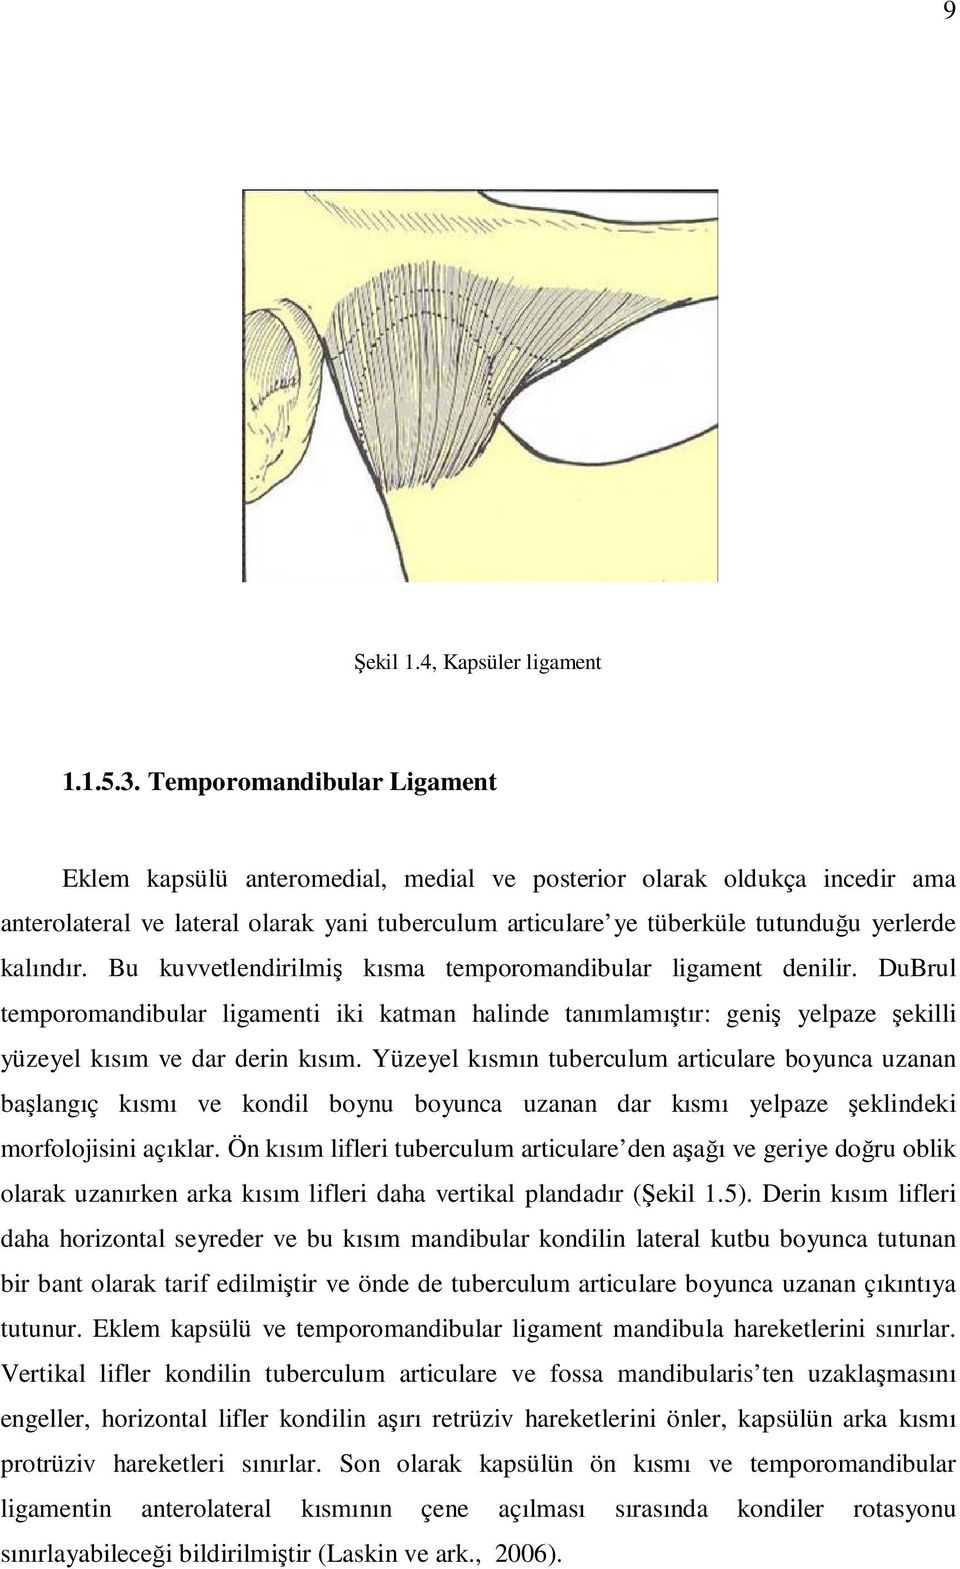 kalındır. Bu kuvvetlendirilmiş kısma temporomandibular ligament denilir. DuBrul temporomandibular ligamenti iki katman halinde tanımlamıştır: geniş yelpaze şekilli yüzeyel kısım ve dar derin kısım.